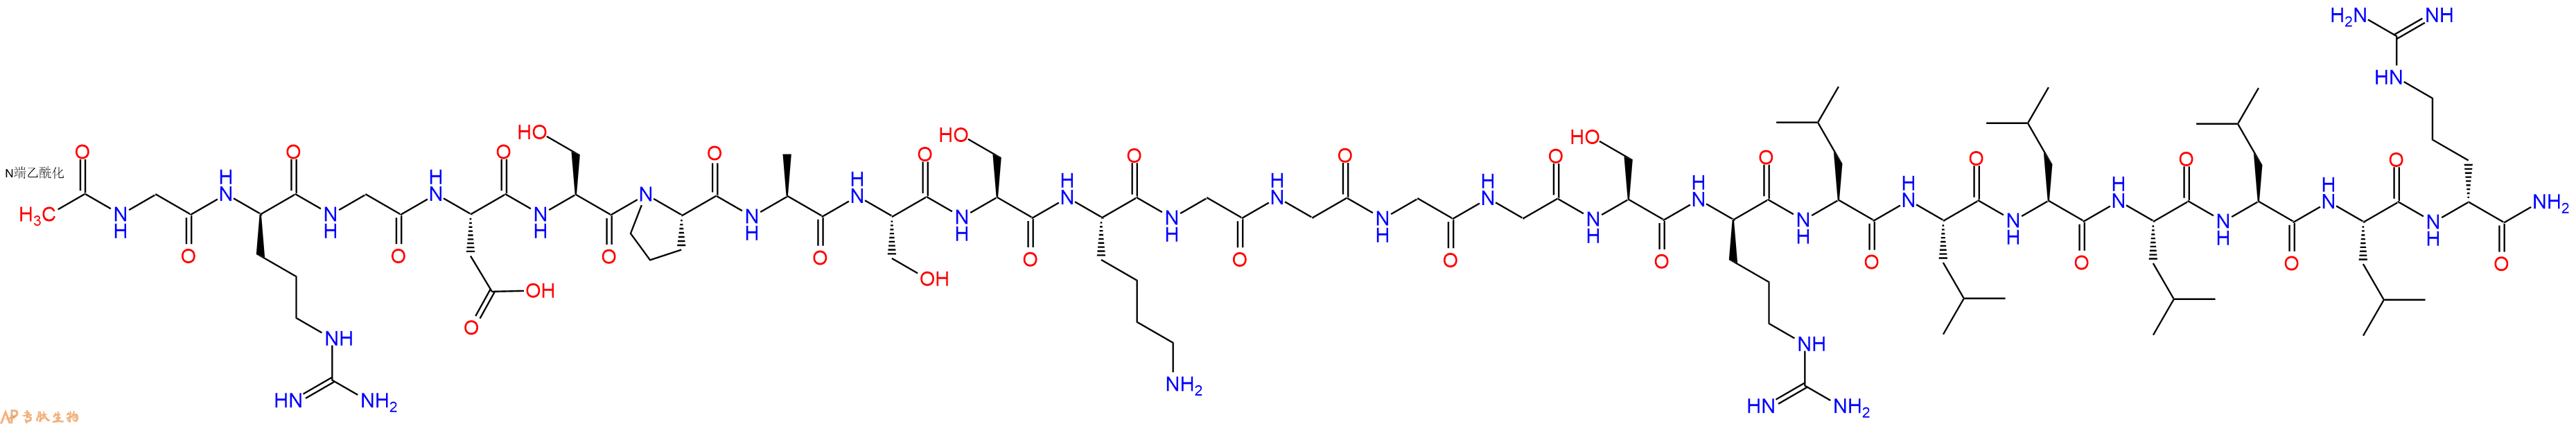 专肽生物产品二十三肽Ac-G-DArg-GDSPASSKGGGGS-DArg-LLLLLL-DArg-NH2